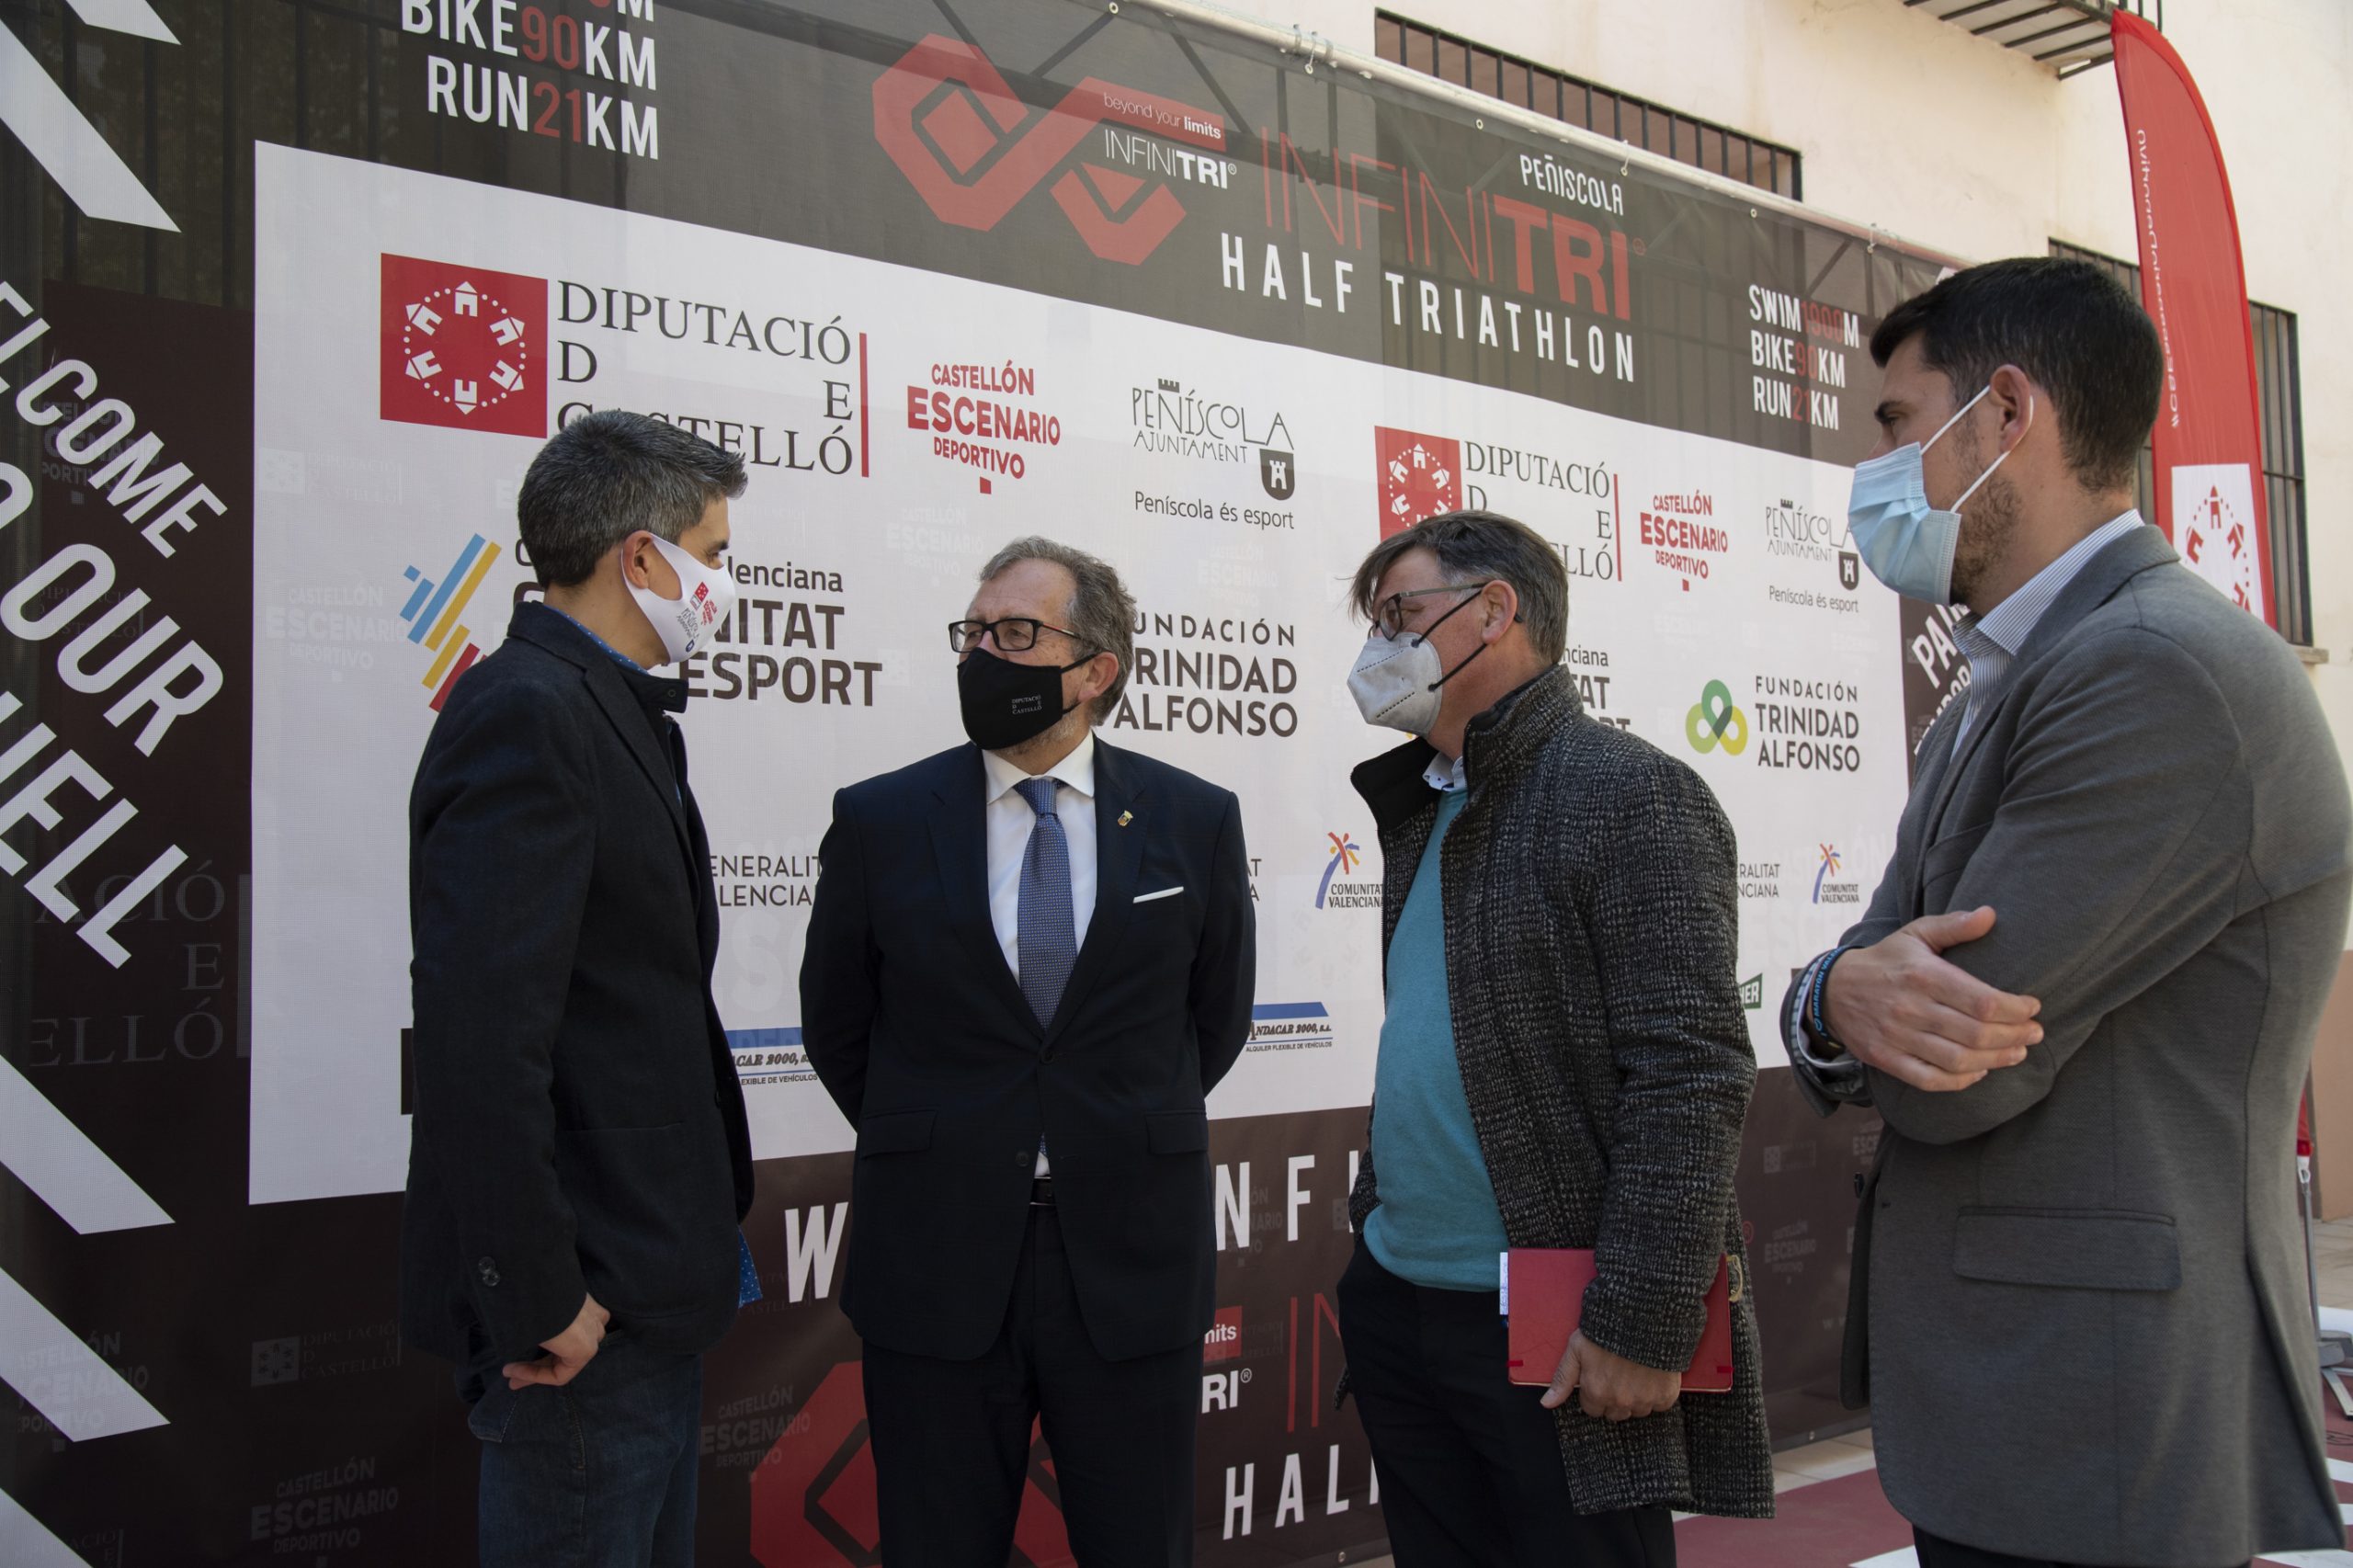 La Diputación de Castellón avala la celebración del Infinitri Half Triathlon en Peñíscola por su potencial para difundir la imagen de la provincia